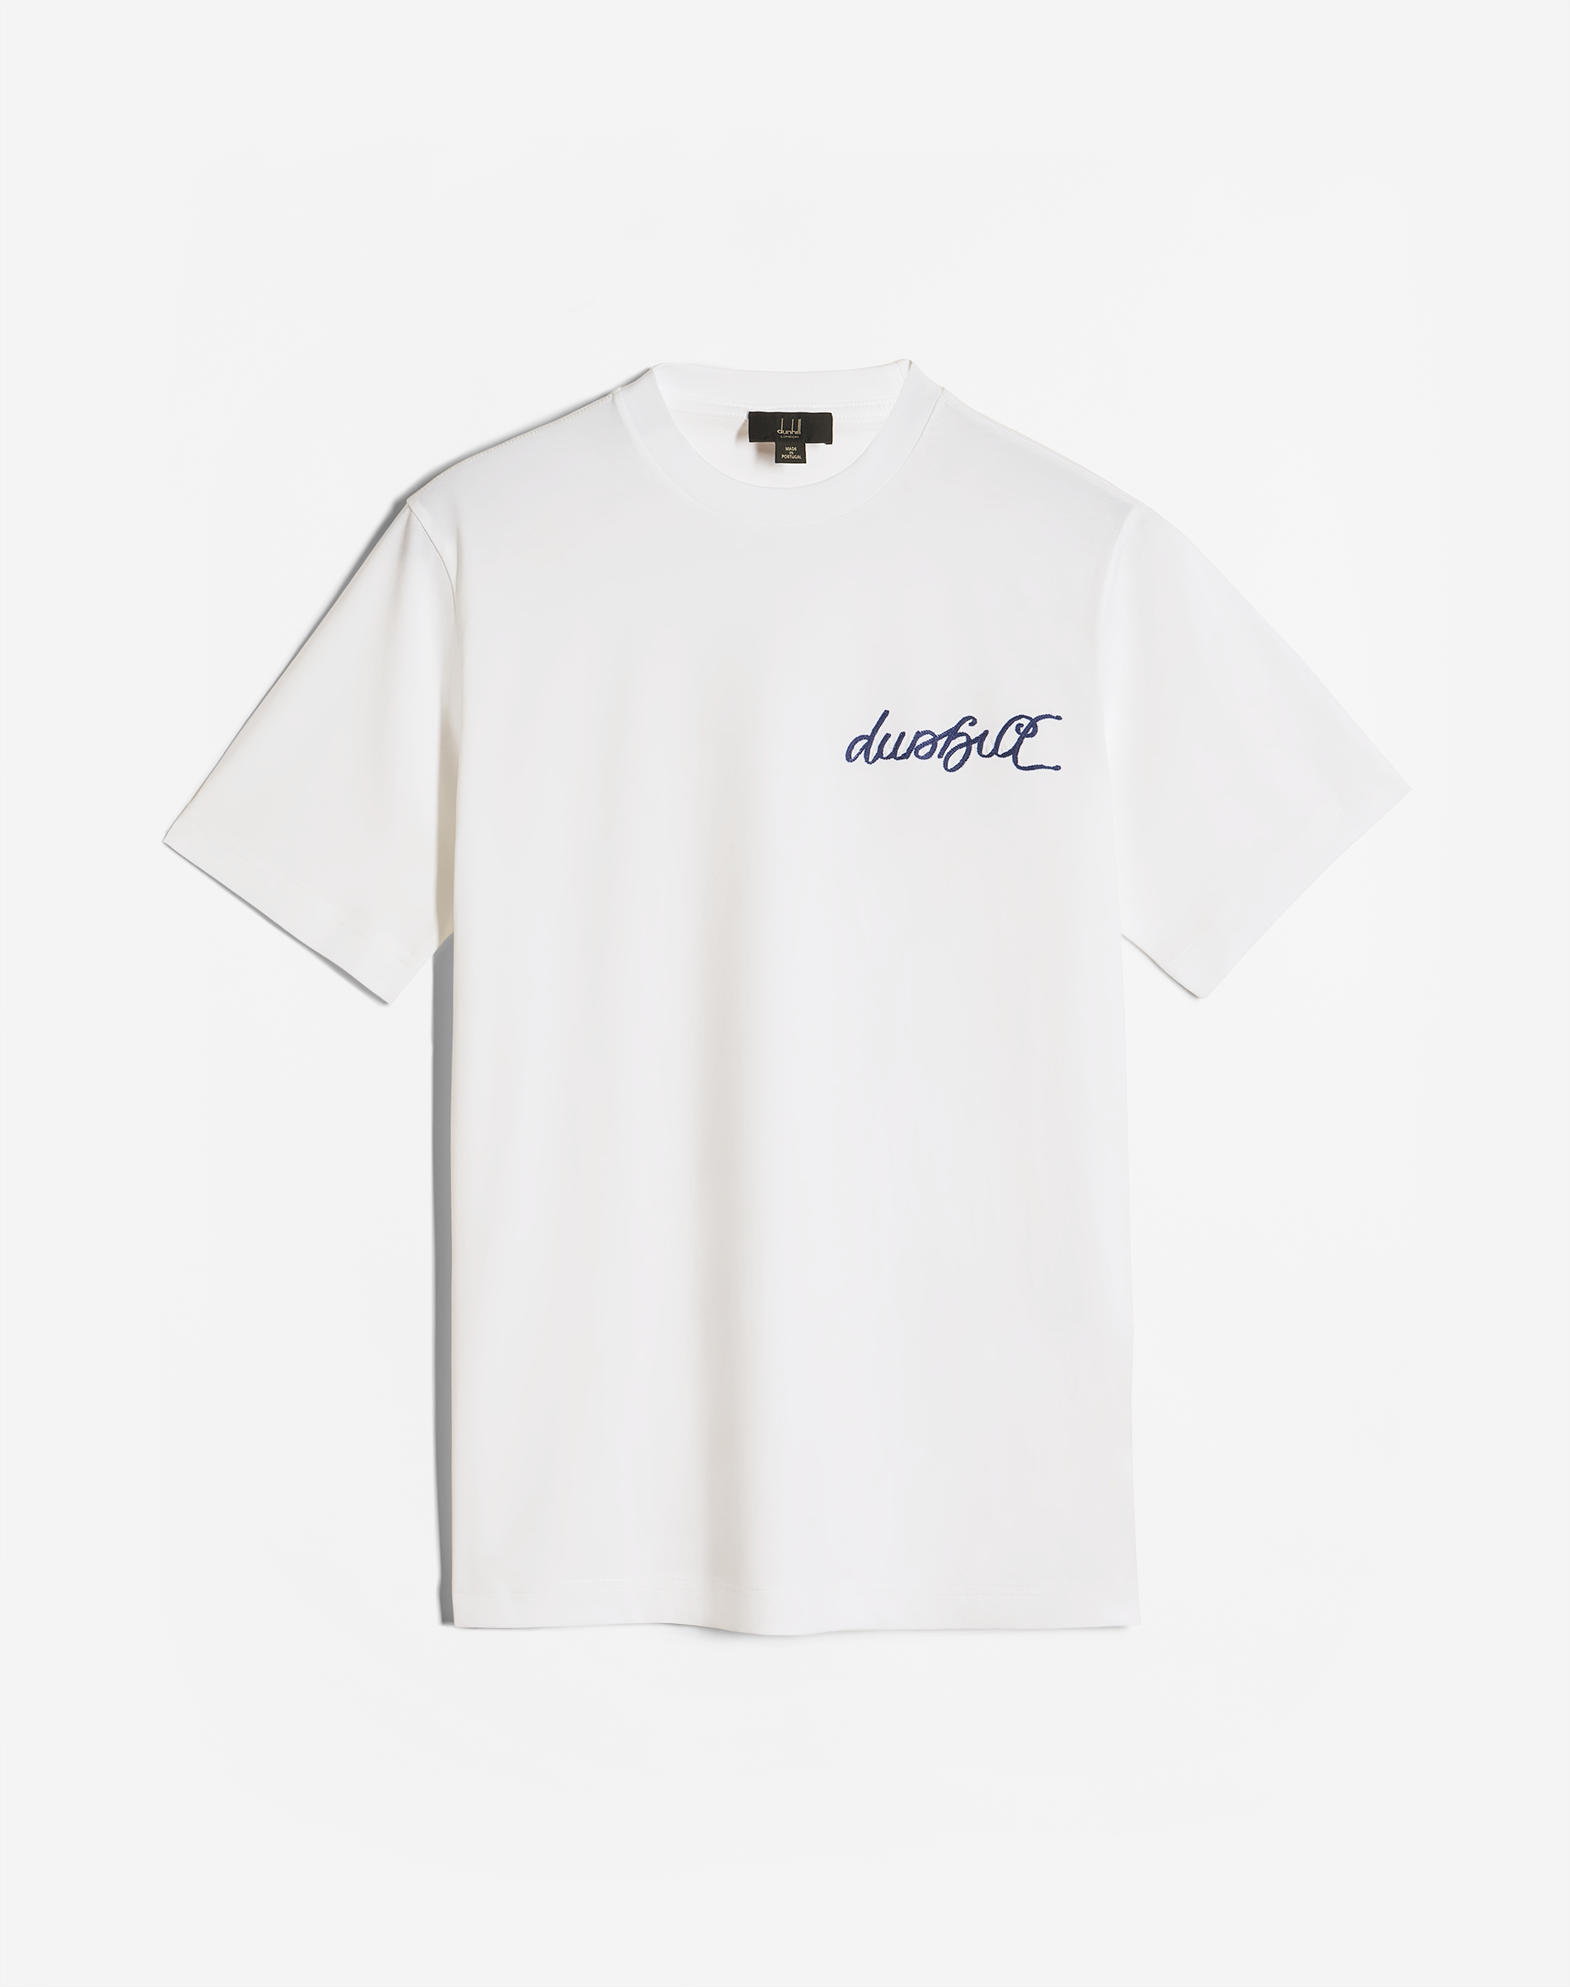 Dunhill Men's T-shirt